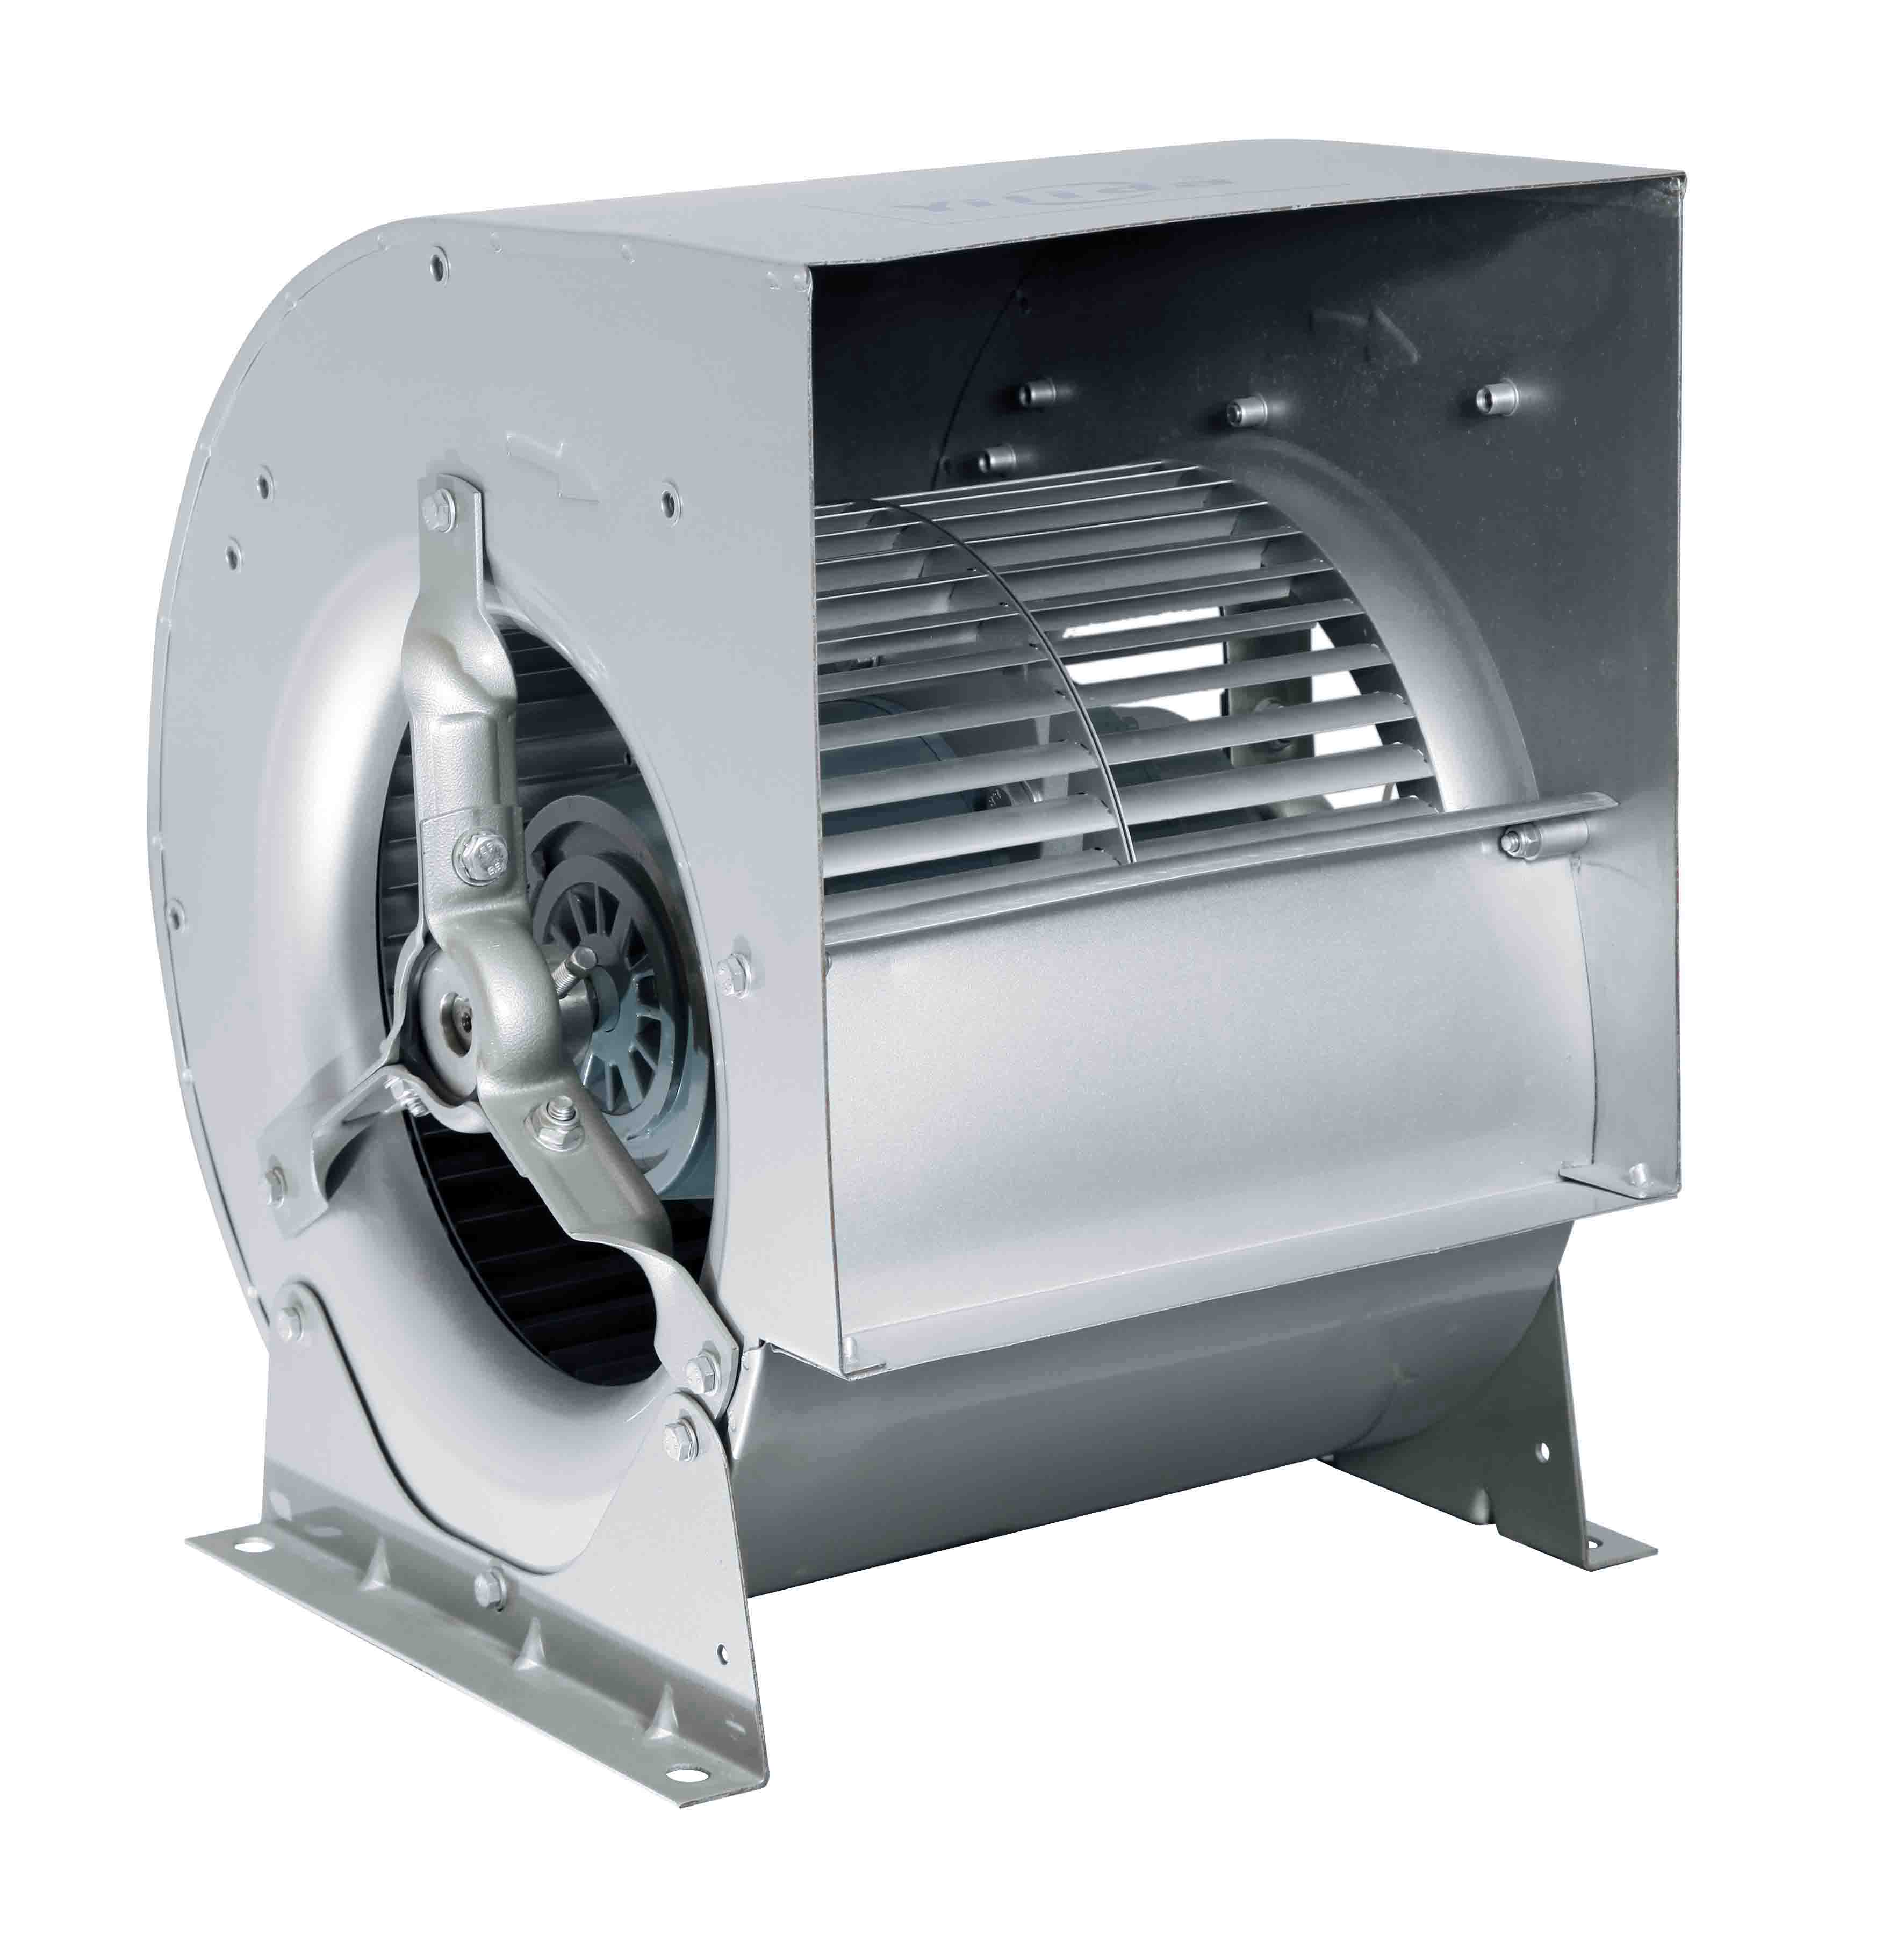 Ventiladores centrífugos para AHU,FFU, MAU, sistema HVAC Imagen destacada